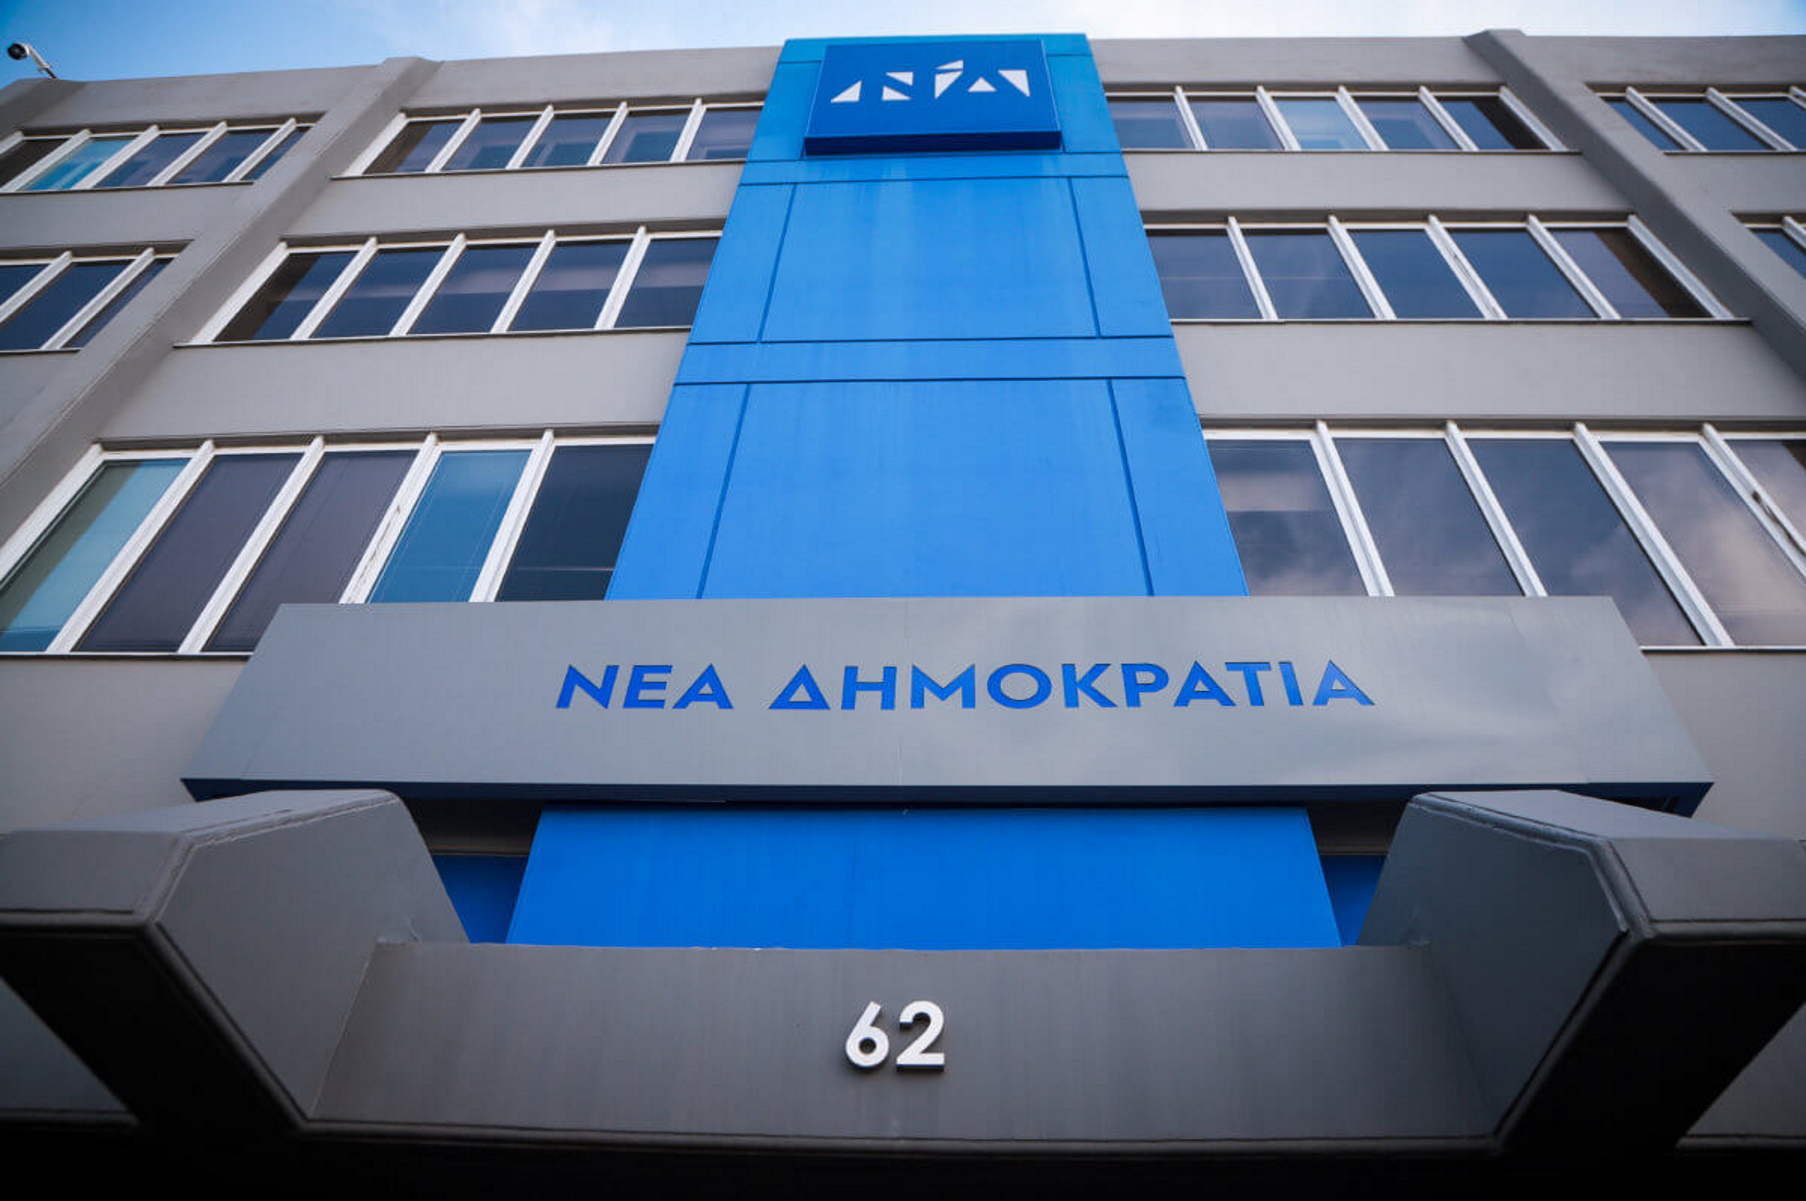 ΝΔ: Ο ΣΥΡΙΖΑ κατασκευάζει την δική του πραγματικότητα μέσω εταιρείας που διενεργεί «φιλικές μετρήσεις»